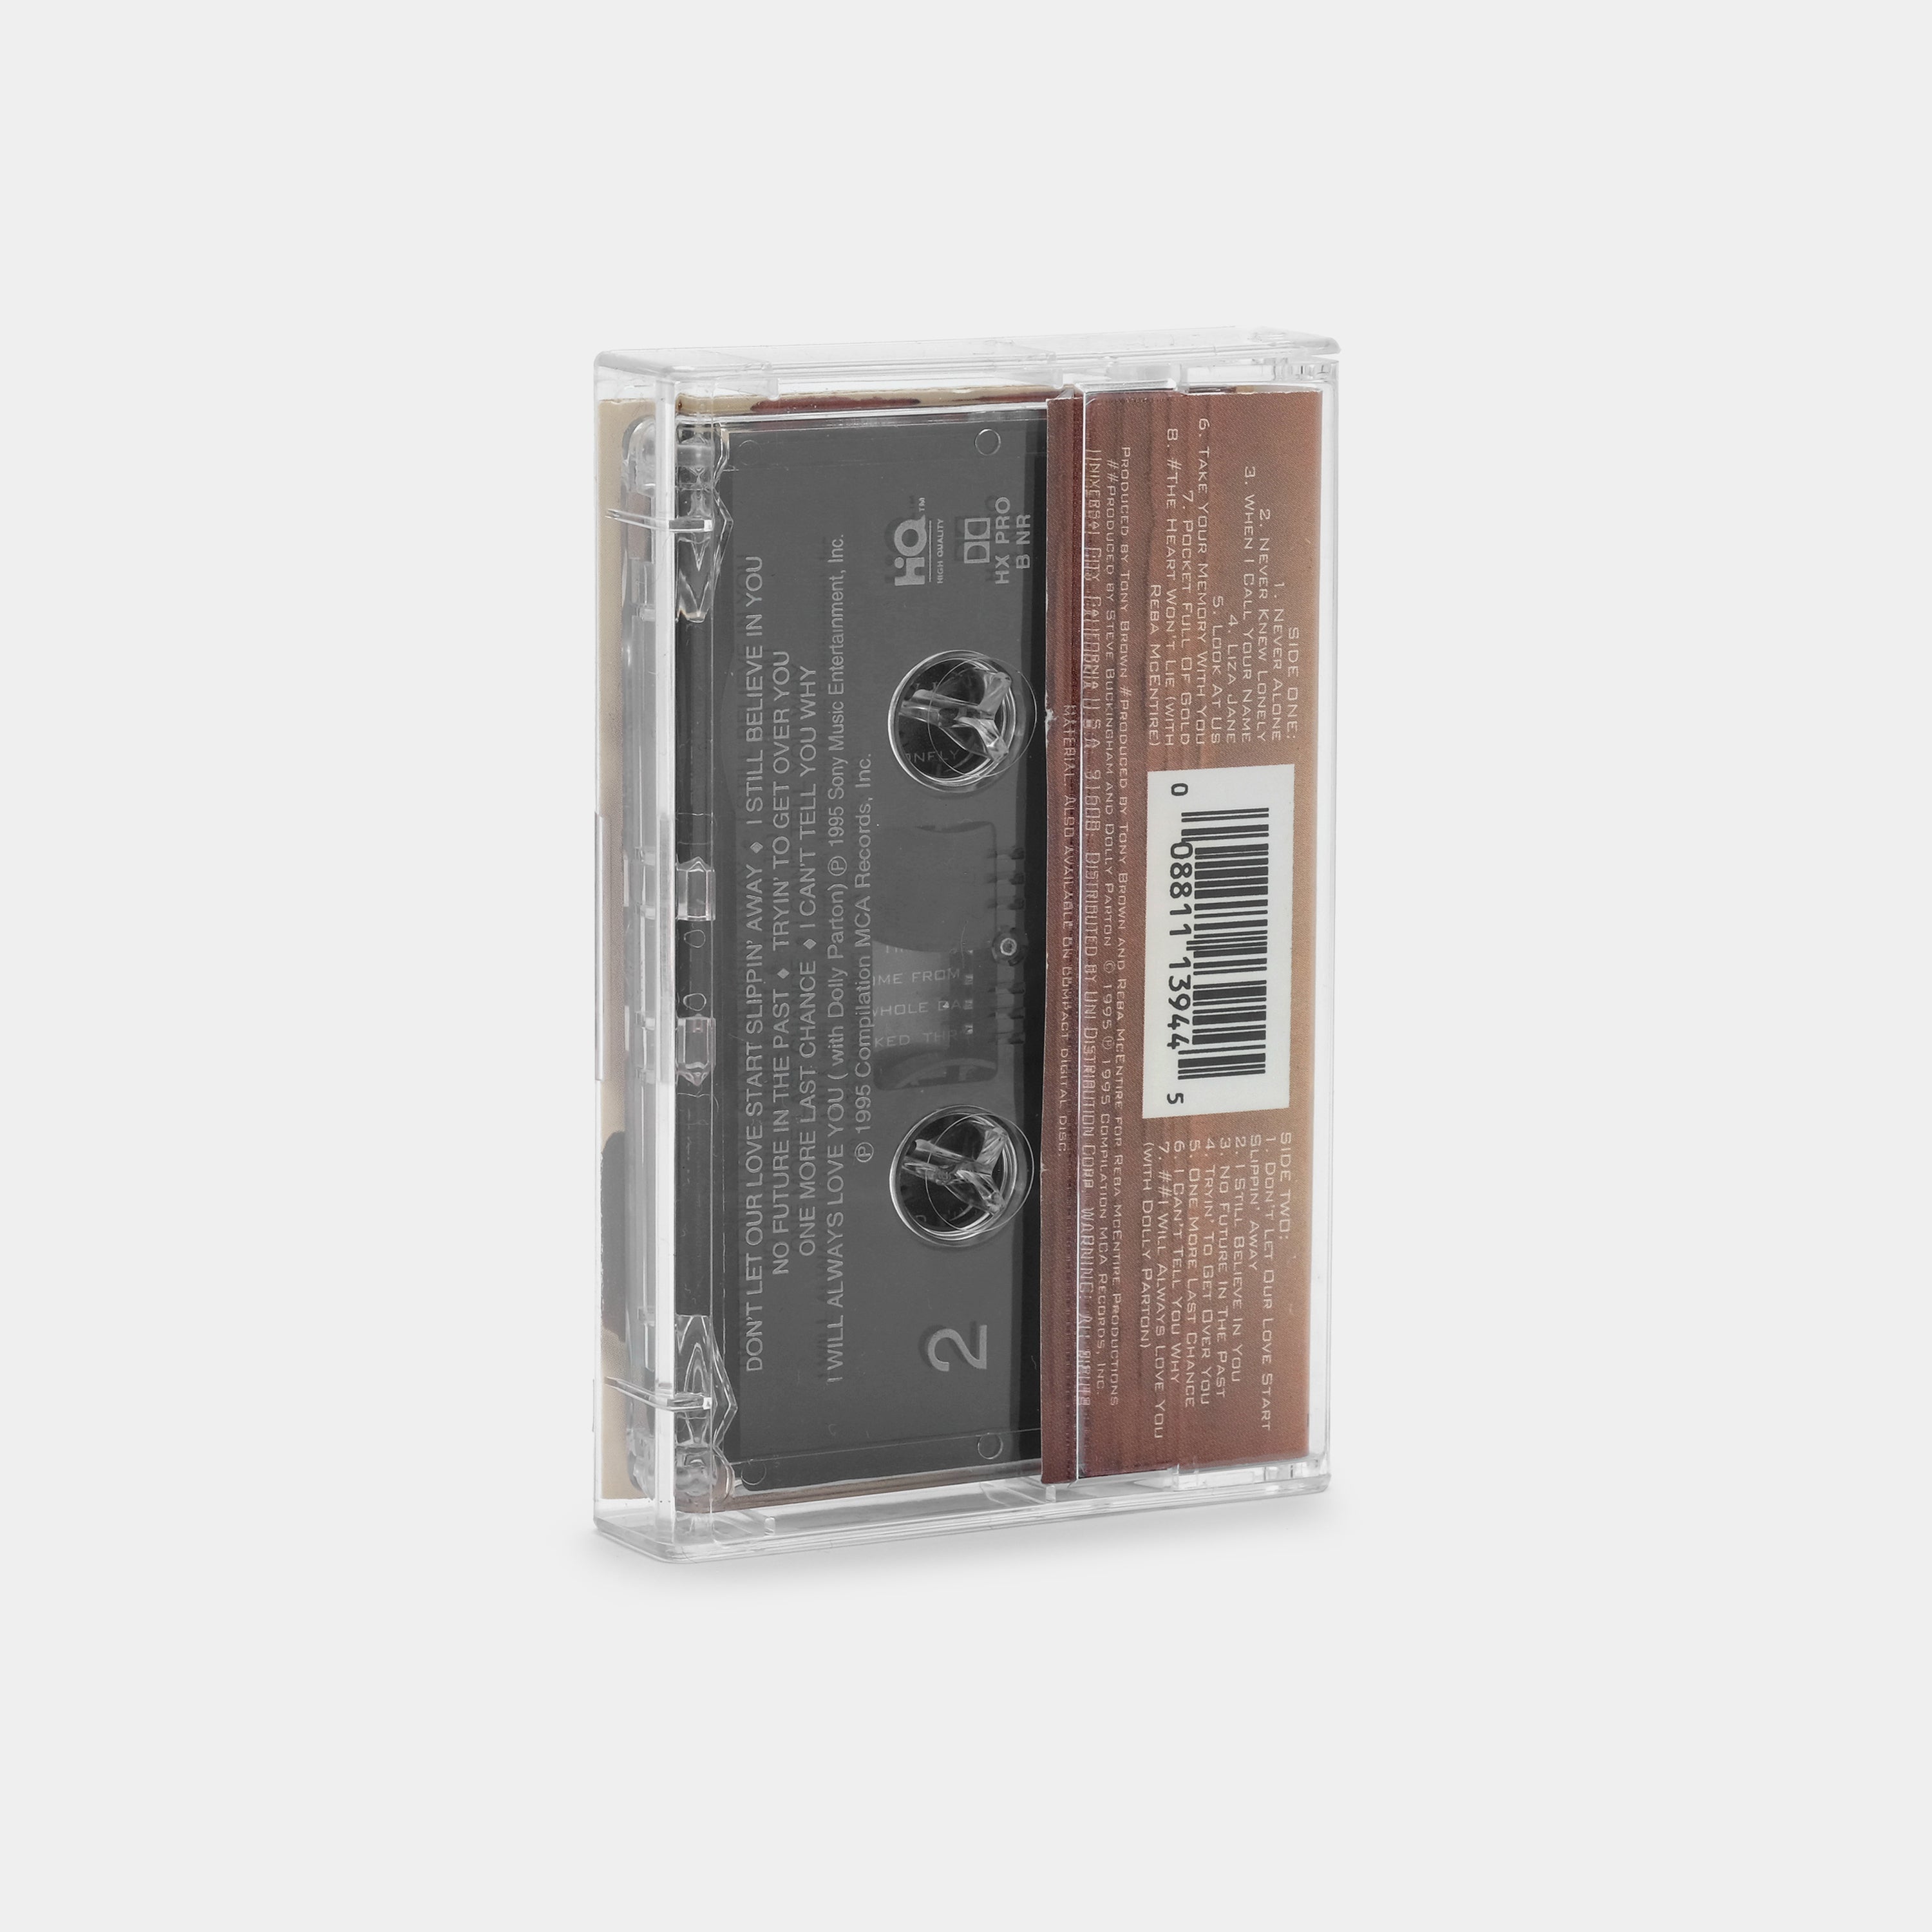 Vince Gill - Souvenirs Cassette Tape